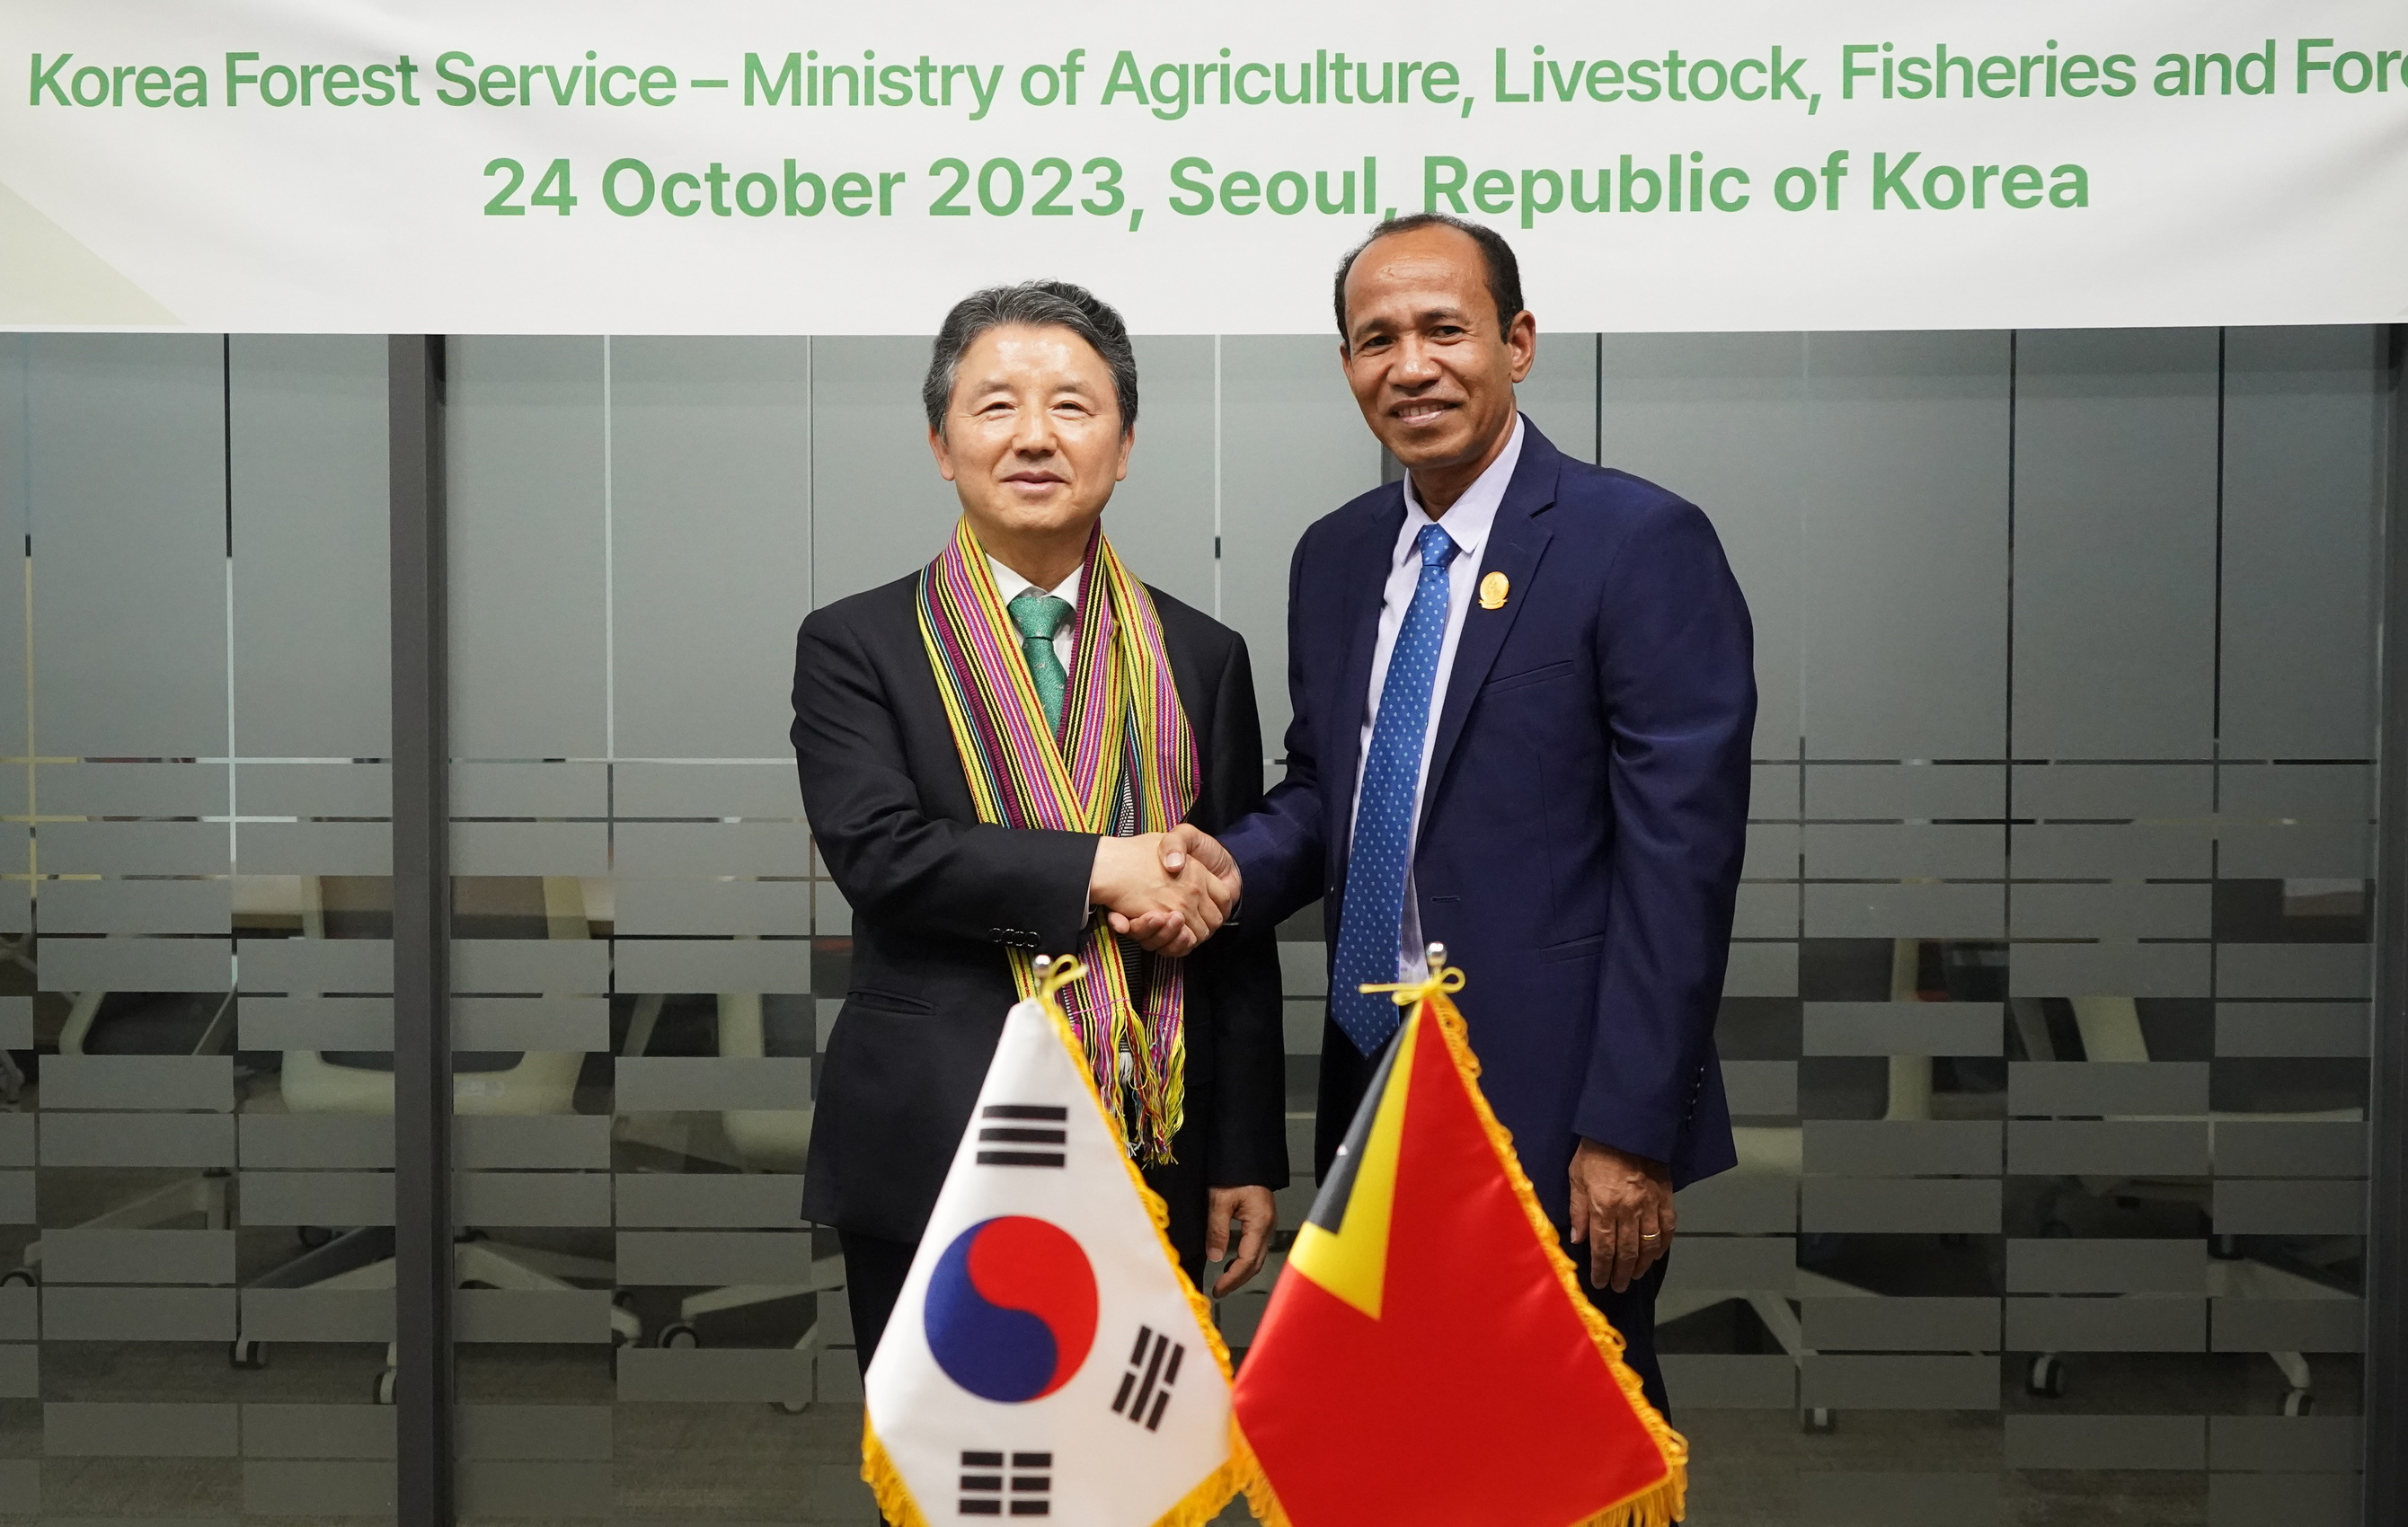 Korea-Timor-Leste Forest Cooperation 이미지1